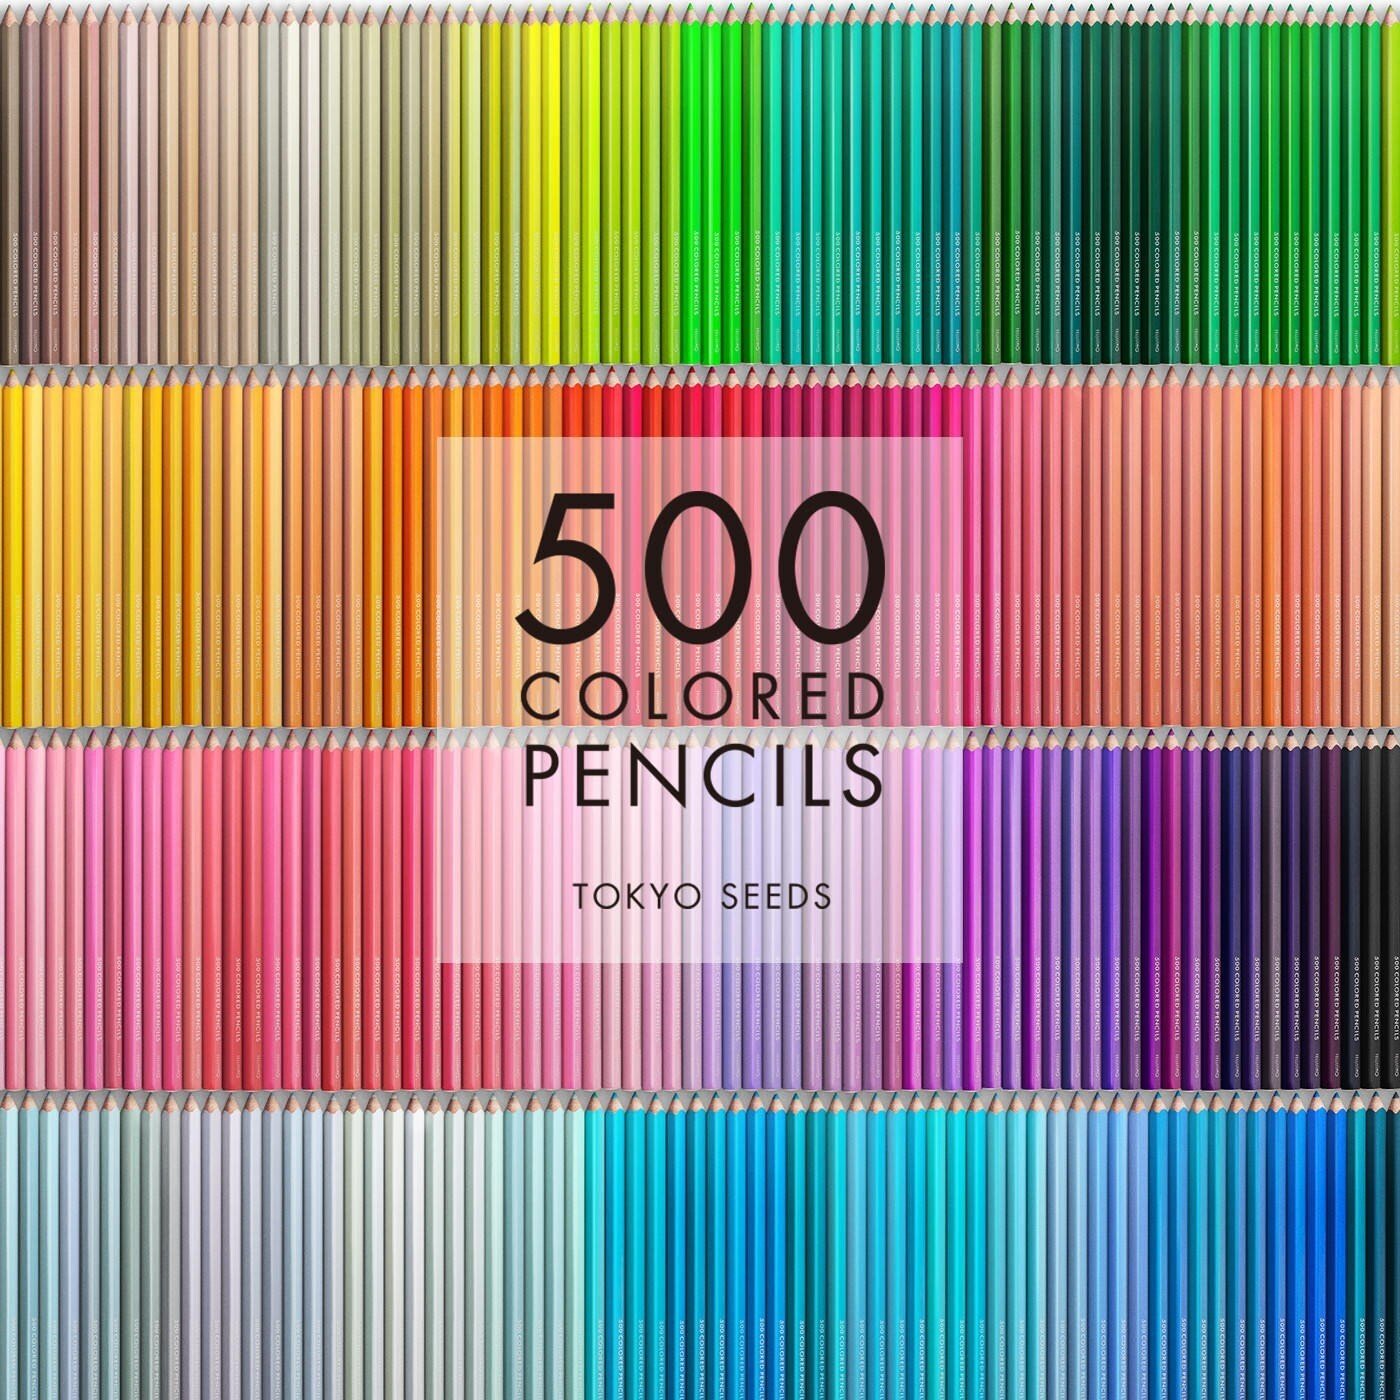 かくも楽しき色鉛筆の世界。色鉛筆のブランドについて